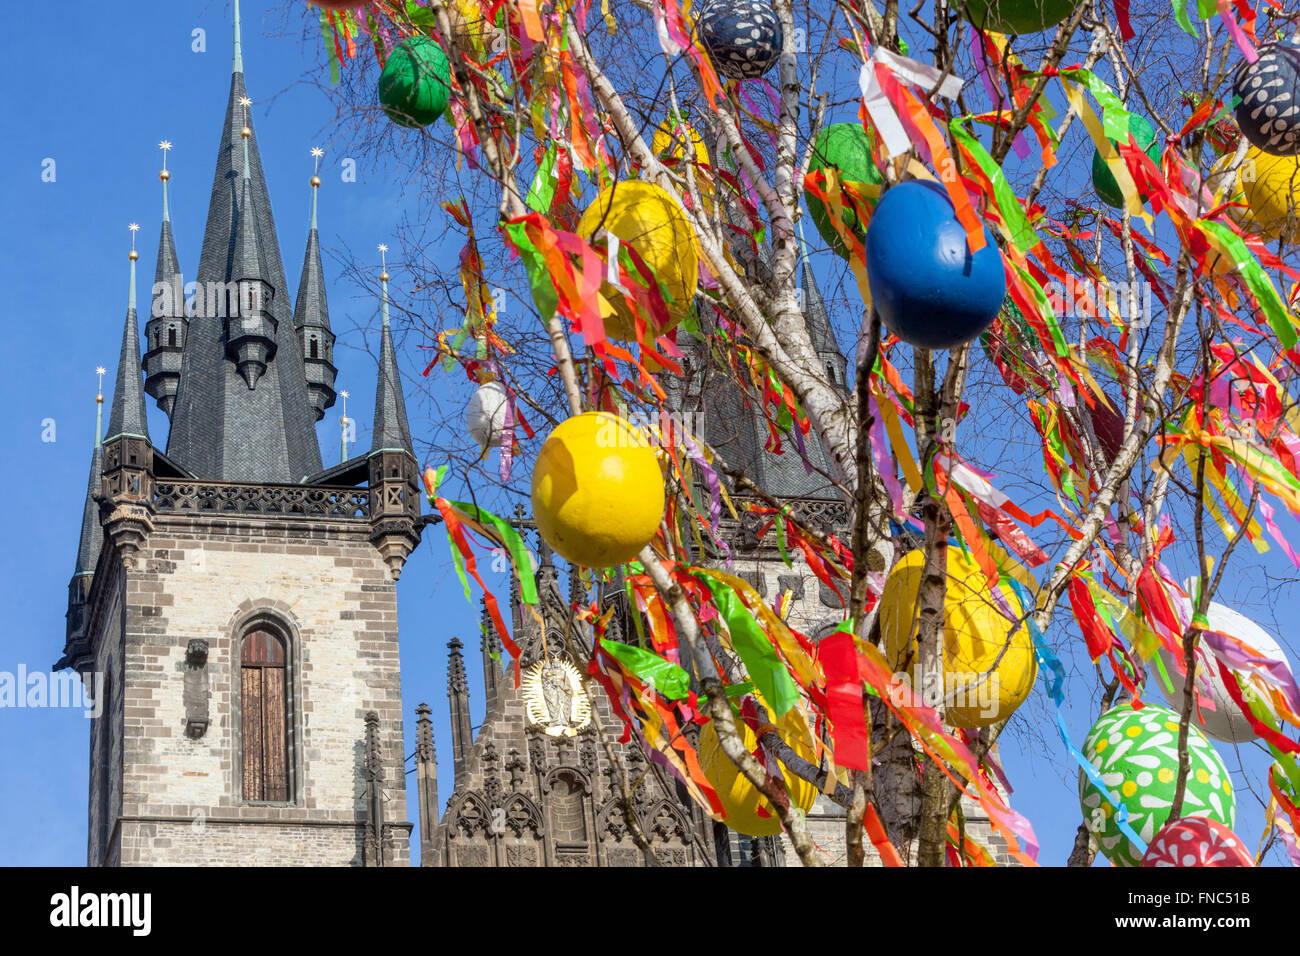 Arbre de Pâques tchèque oeufs suspendus aux branches oeufs colorés symbole traditionnel du printemps devant la place de la vieille ville de l'église Tyn, Prague République tchèque Banque D'Images